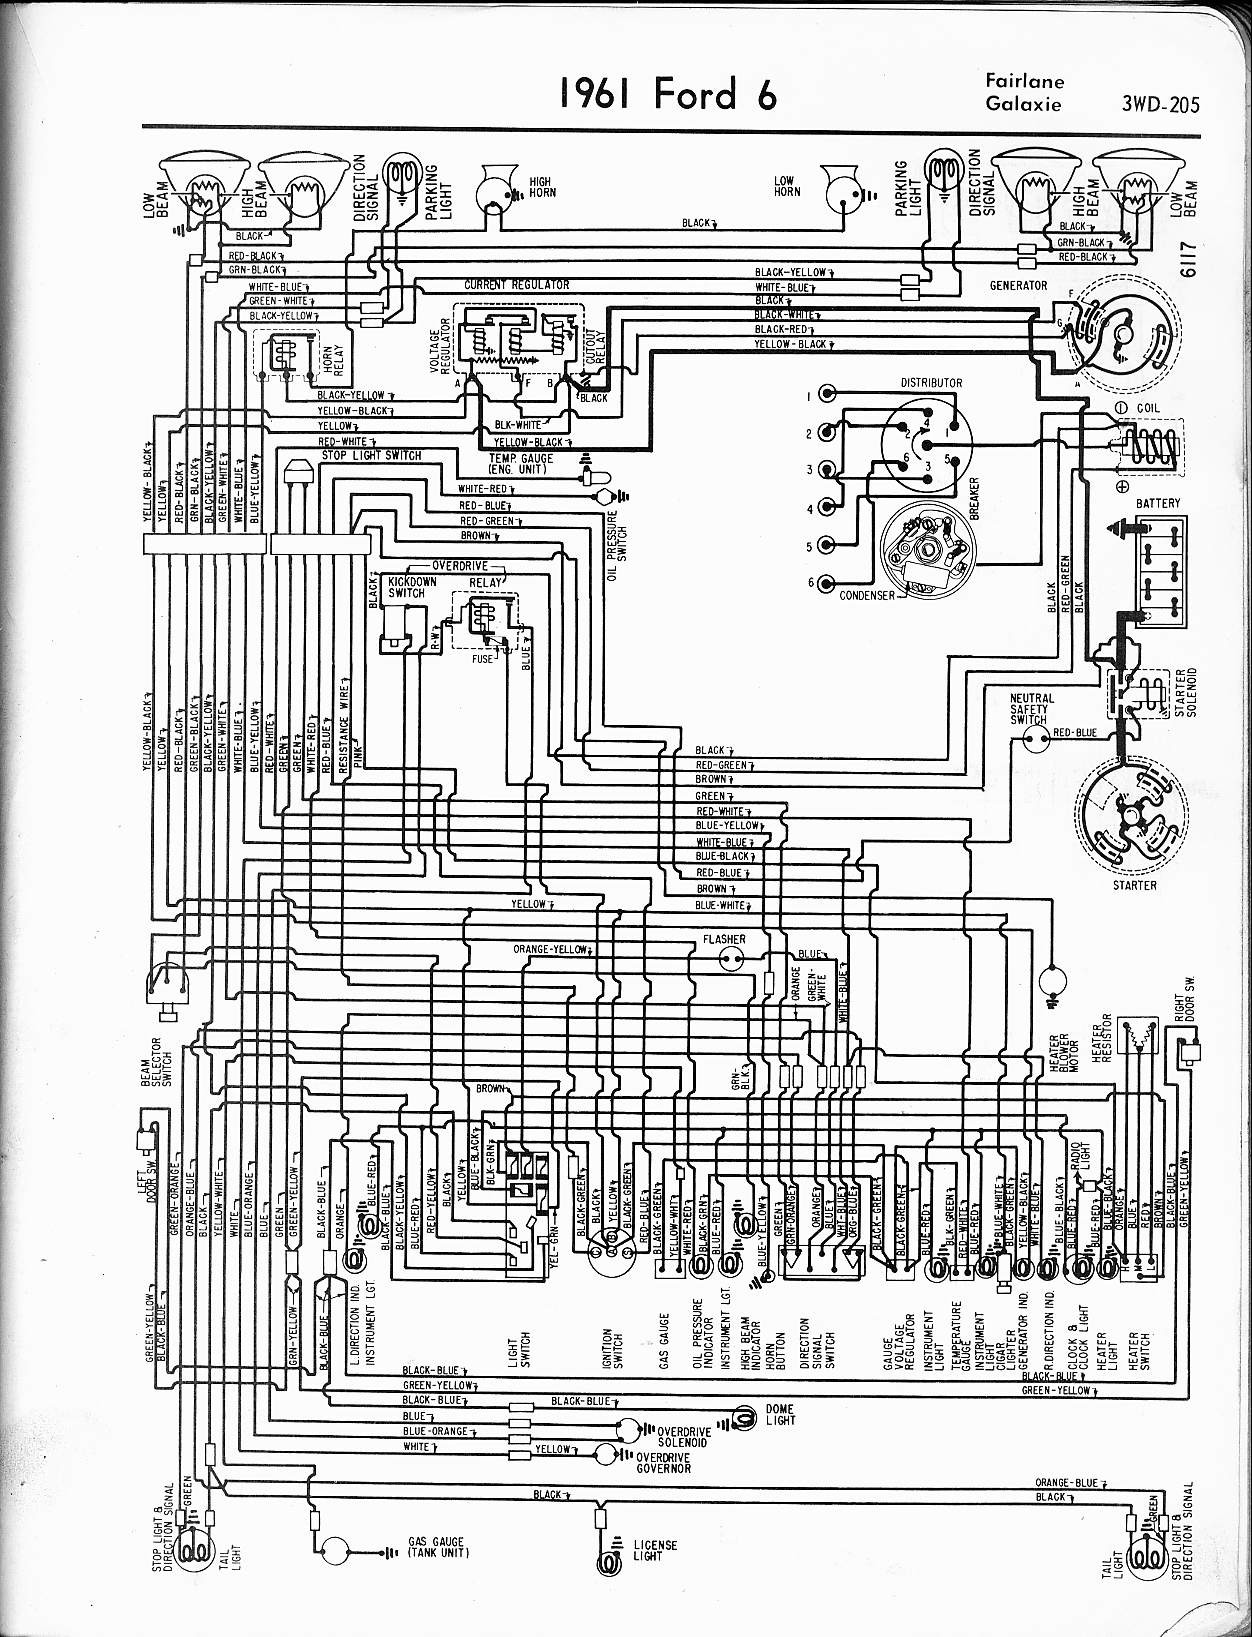 Mercury Mark 55e Wiring Diagram 57 65 ford Wiring Diagrams Of Mercury Mark 55e Wiring Diagram